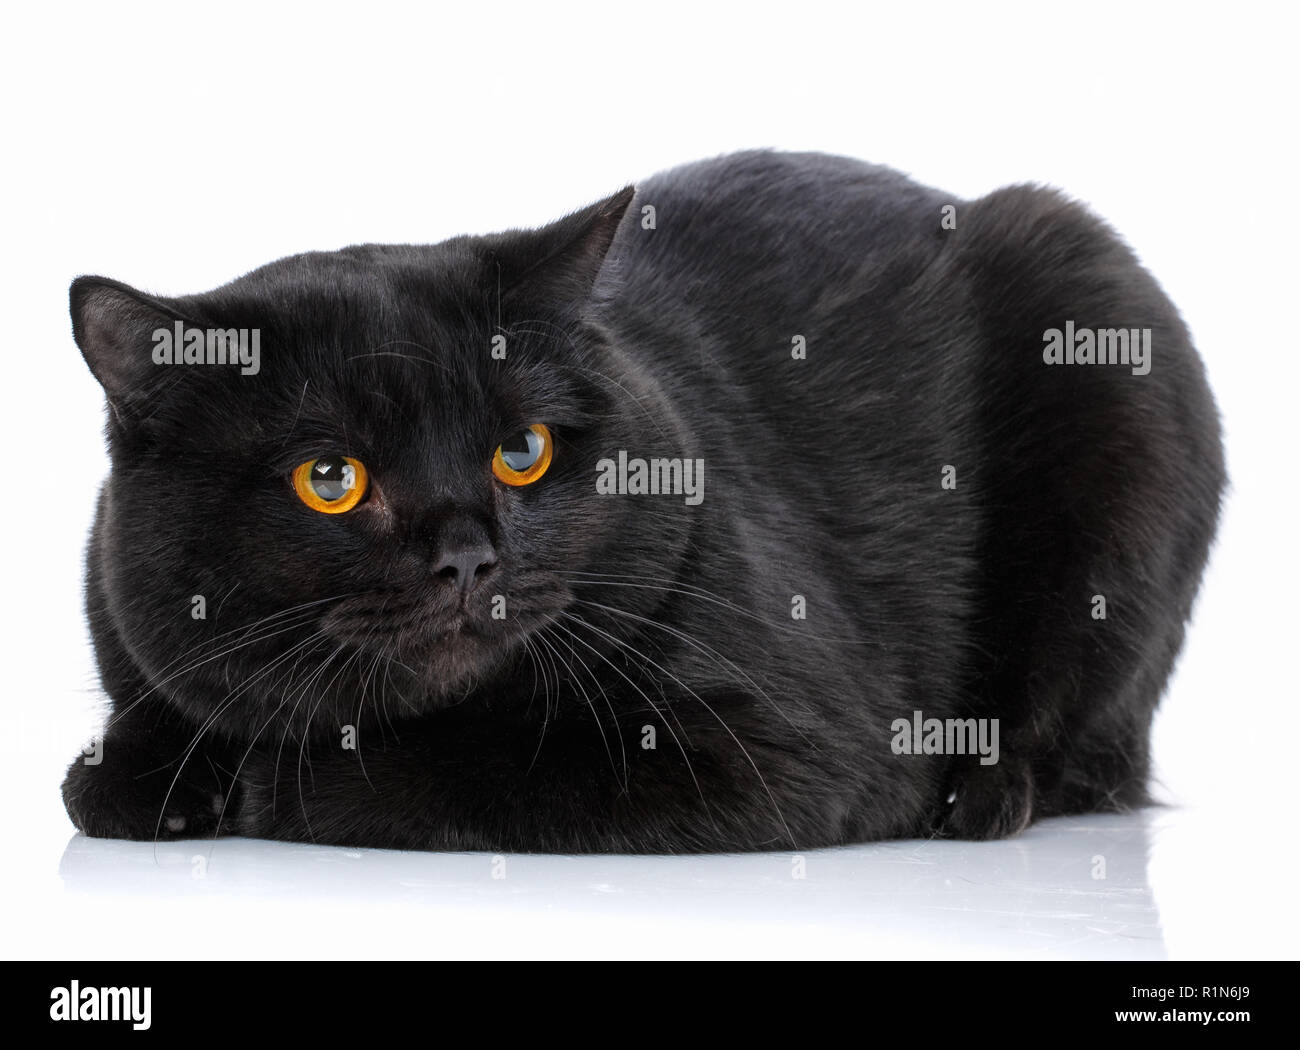 Tier, Cat, pet-Konzept - Schwarze britische Katze Stockfoto